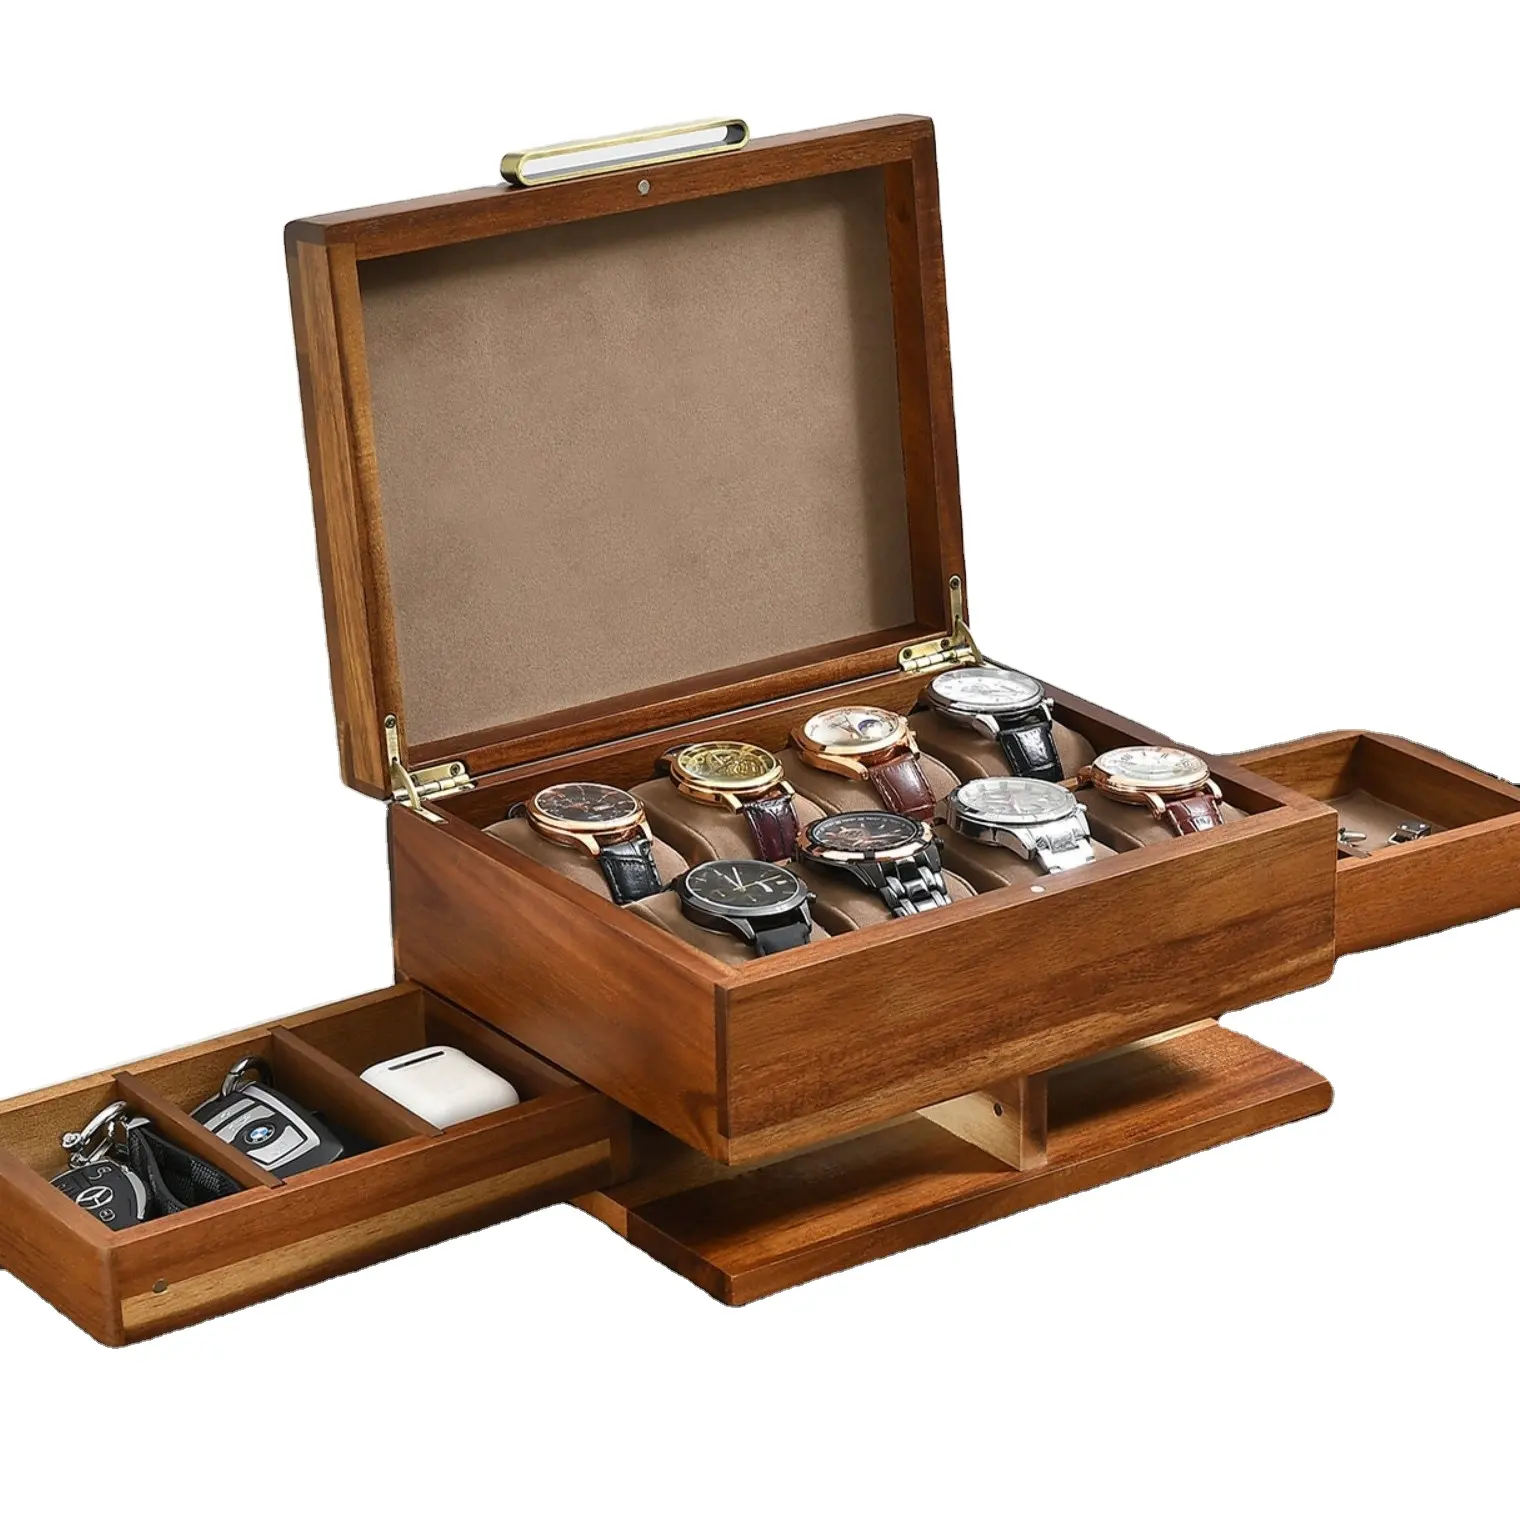 صندوق خشبي للأعطور مخصص حرف محفورة 8 فتحات صناعة يدوية منظم عرض مع إكسسوارات صندوق ساعة خشبي للهدايا